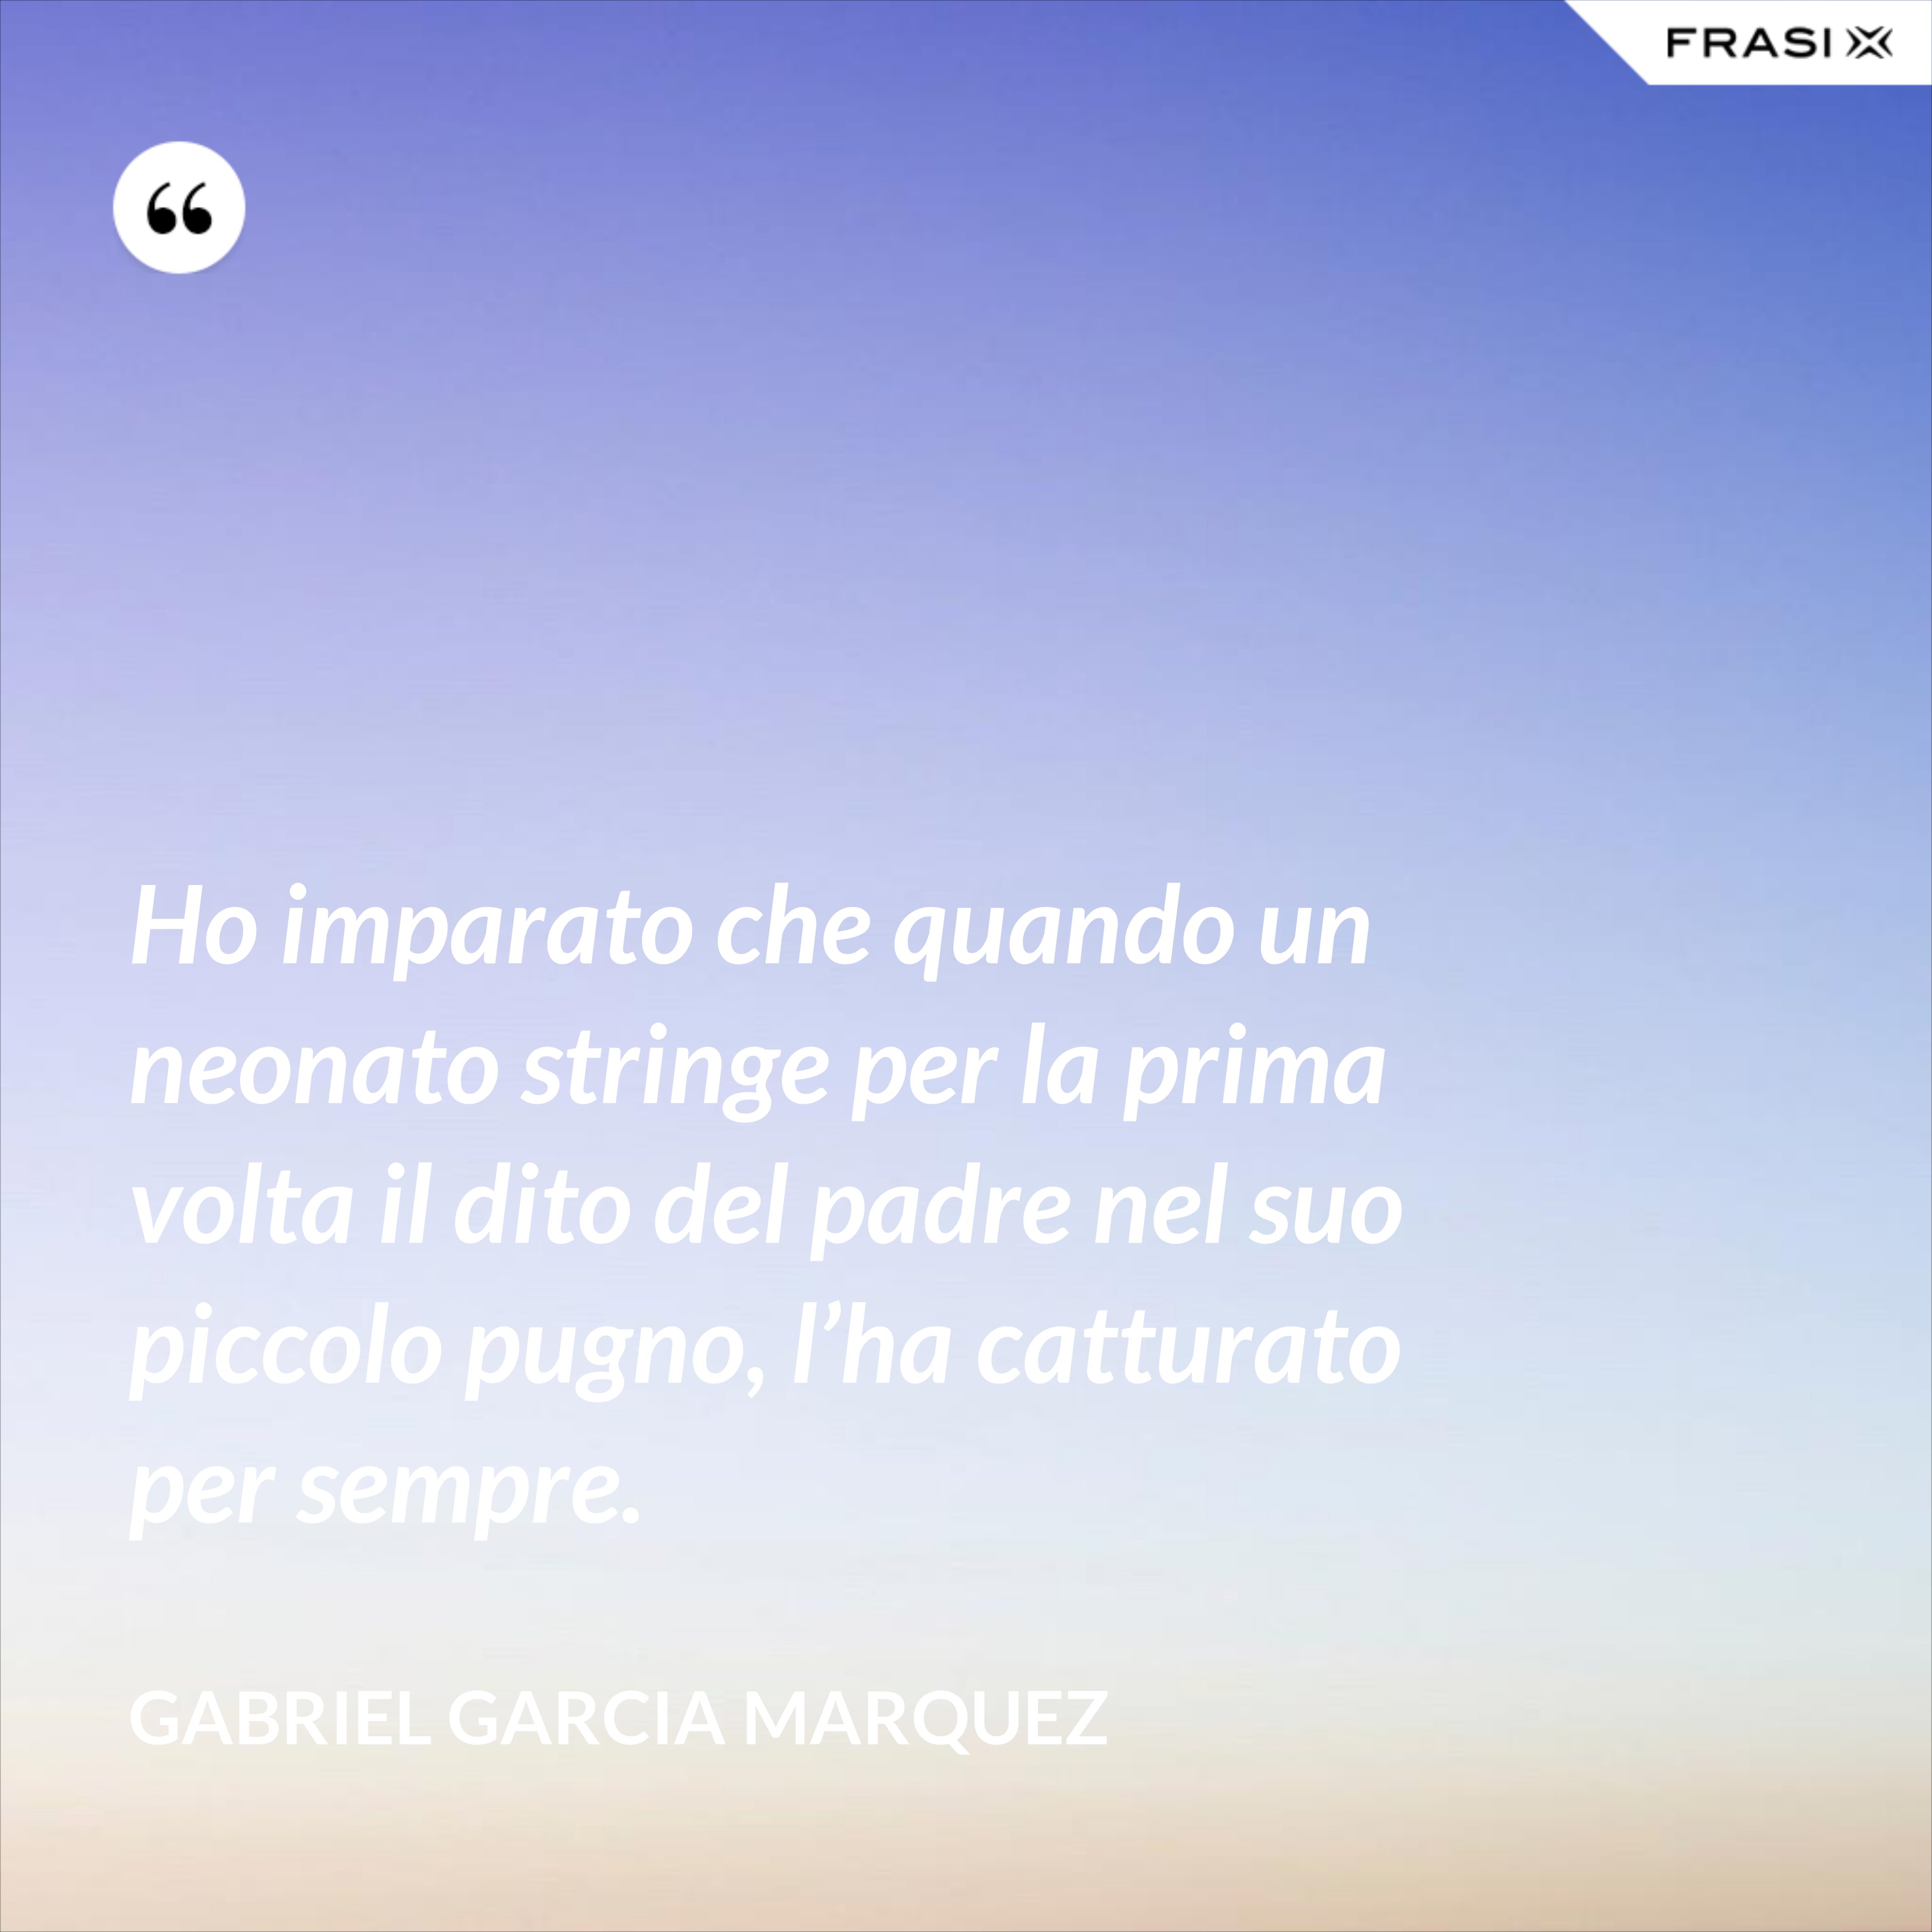 Ho imparato che quando un neonato stringe per la prima volta il dito del padre nel suo piccolo pugno, l’ha catturato per sempre. - Gabriel Garcia Marquez